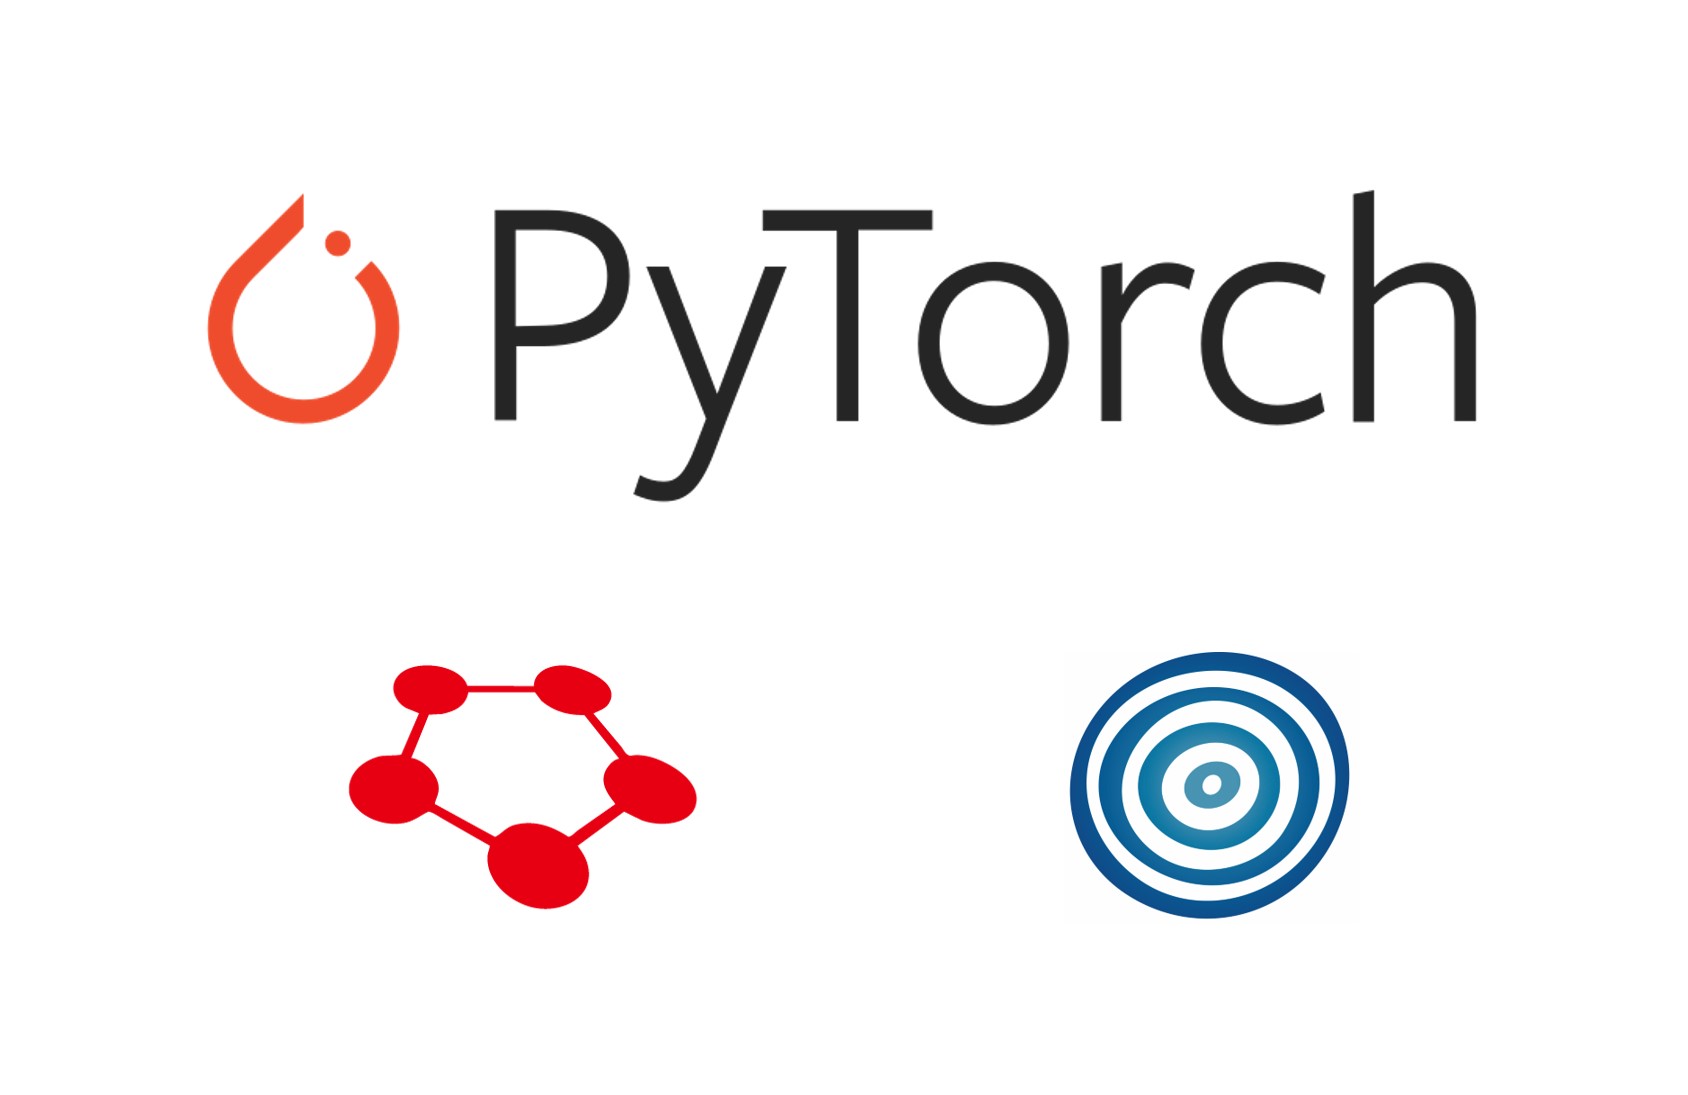 PyTorchコミュニティとの連携を強化